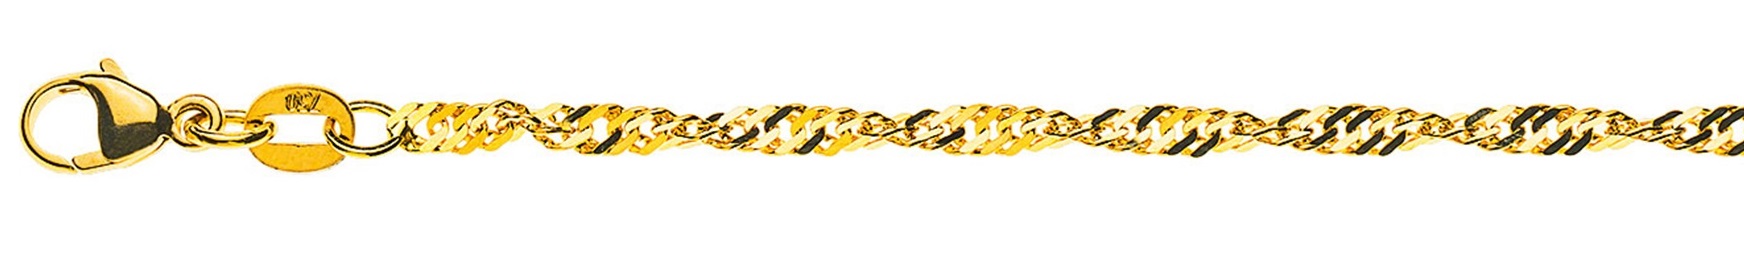 AURONOS Prestige Halskette Gelbgold 18K Singapurkette 45cm 2.4mm